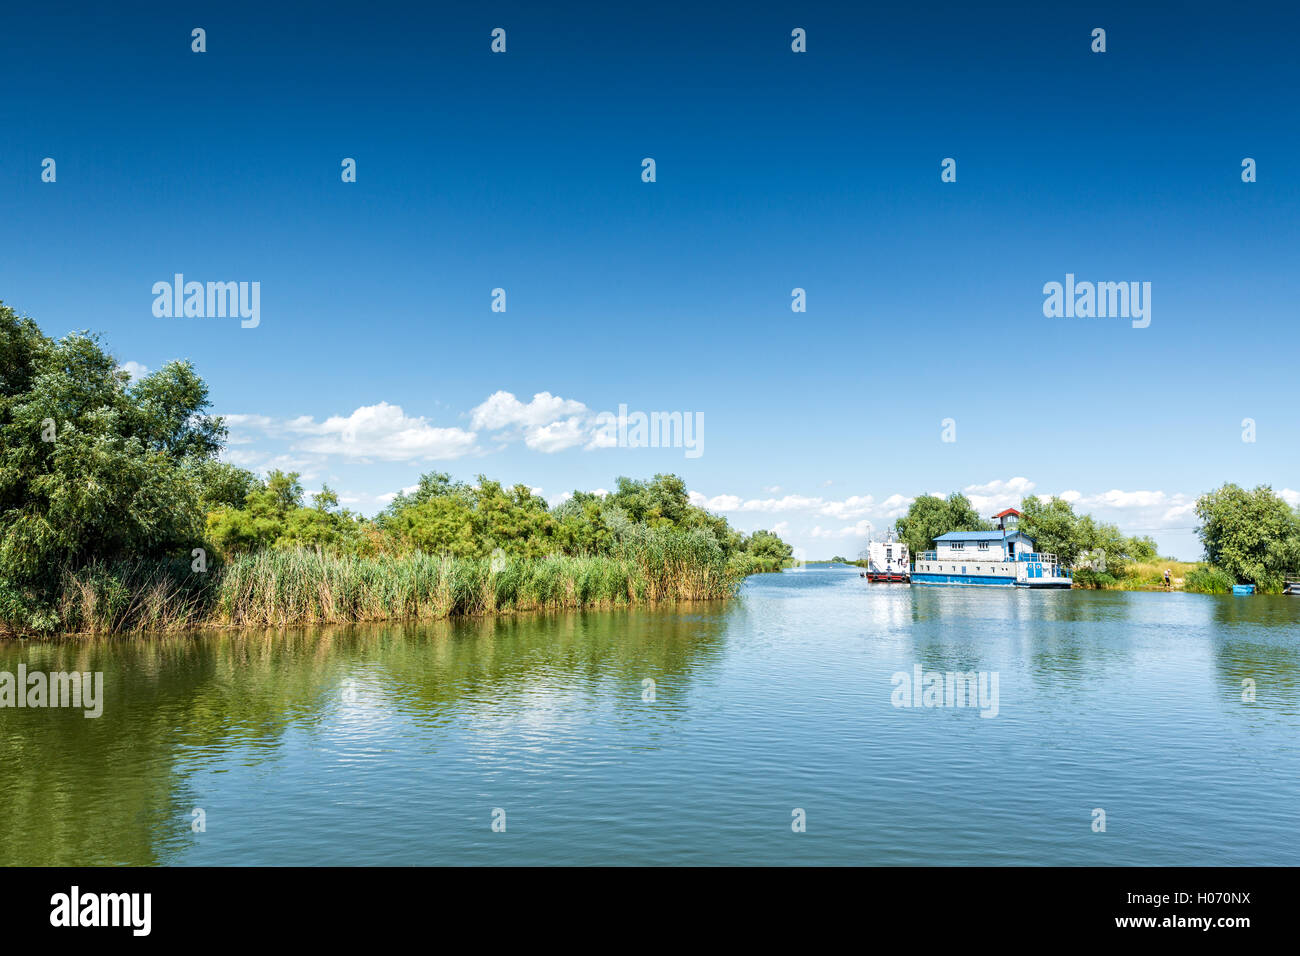 Paysage typique du Delta du Danube, de lacs, de canaux et d'une végétation luxuriante sur une journée ensoleillée, à Gura Portitei resort, Roumanie Banque D'Images